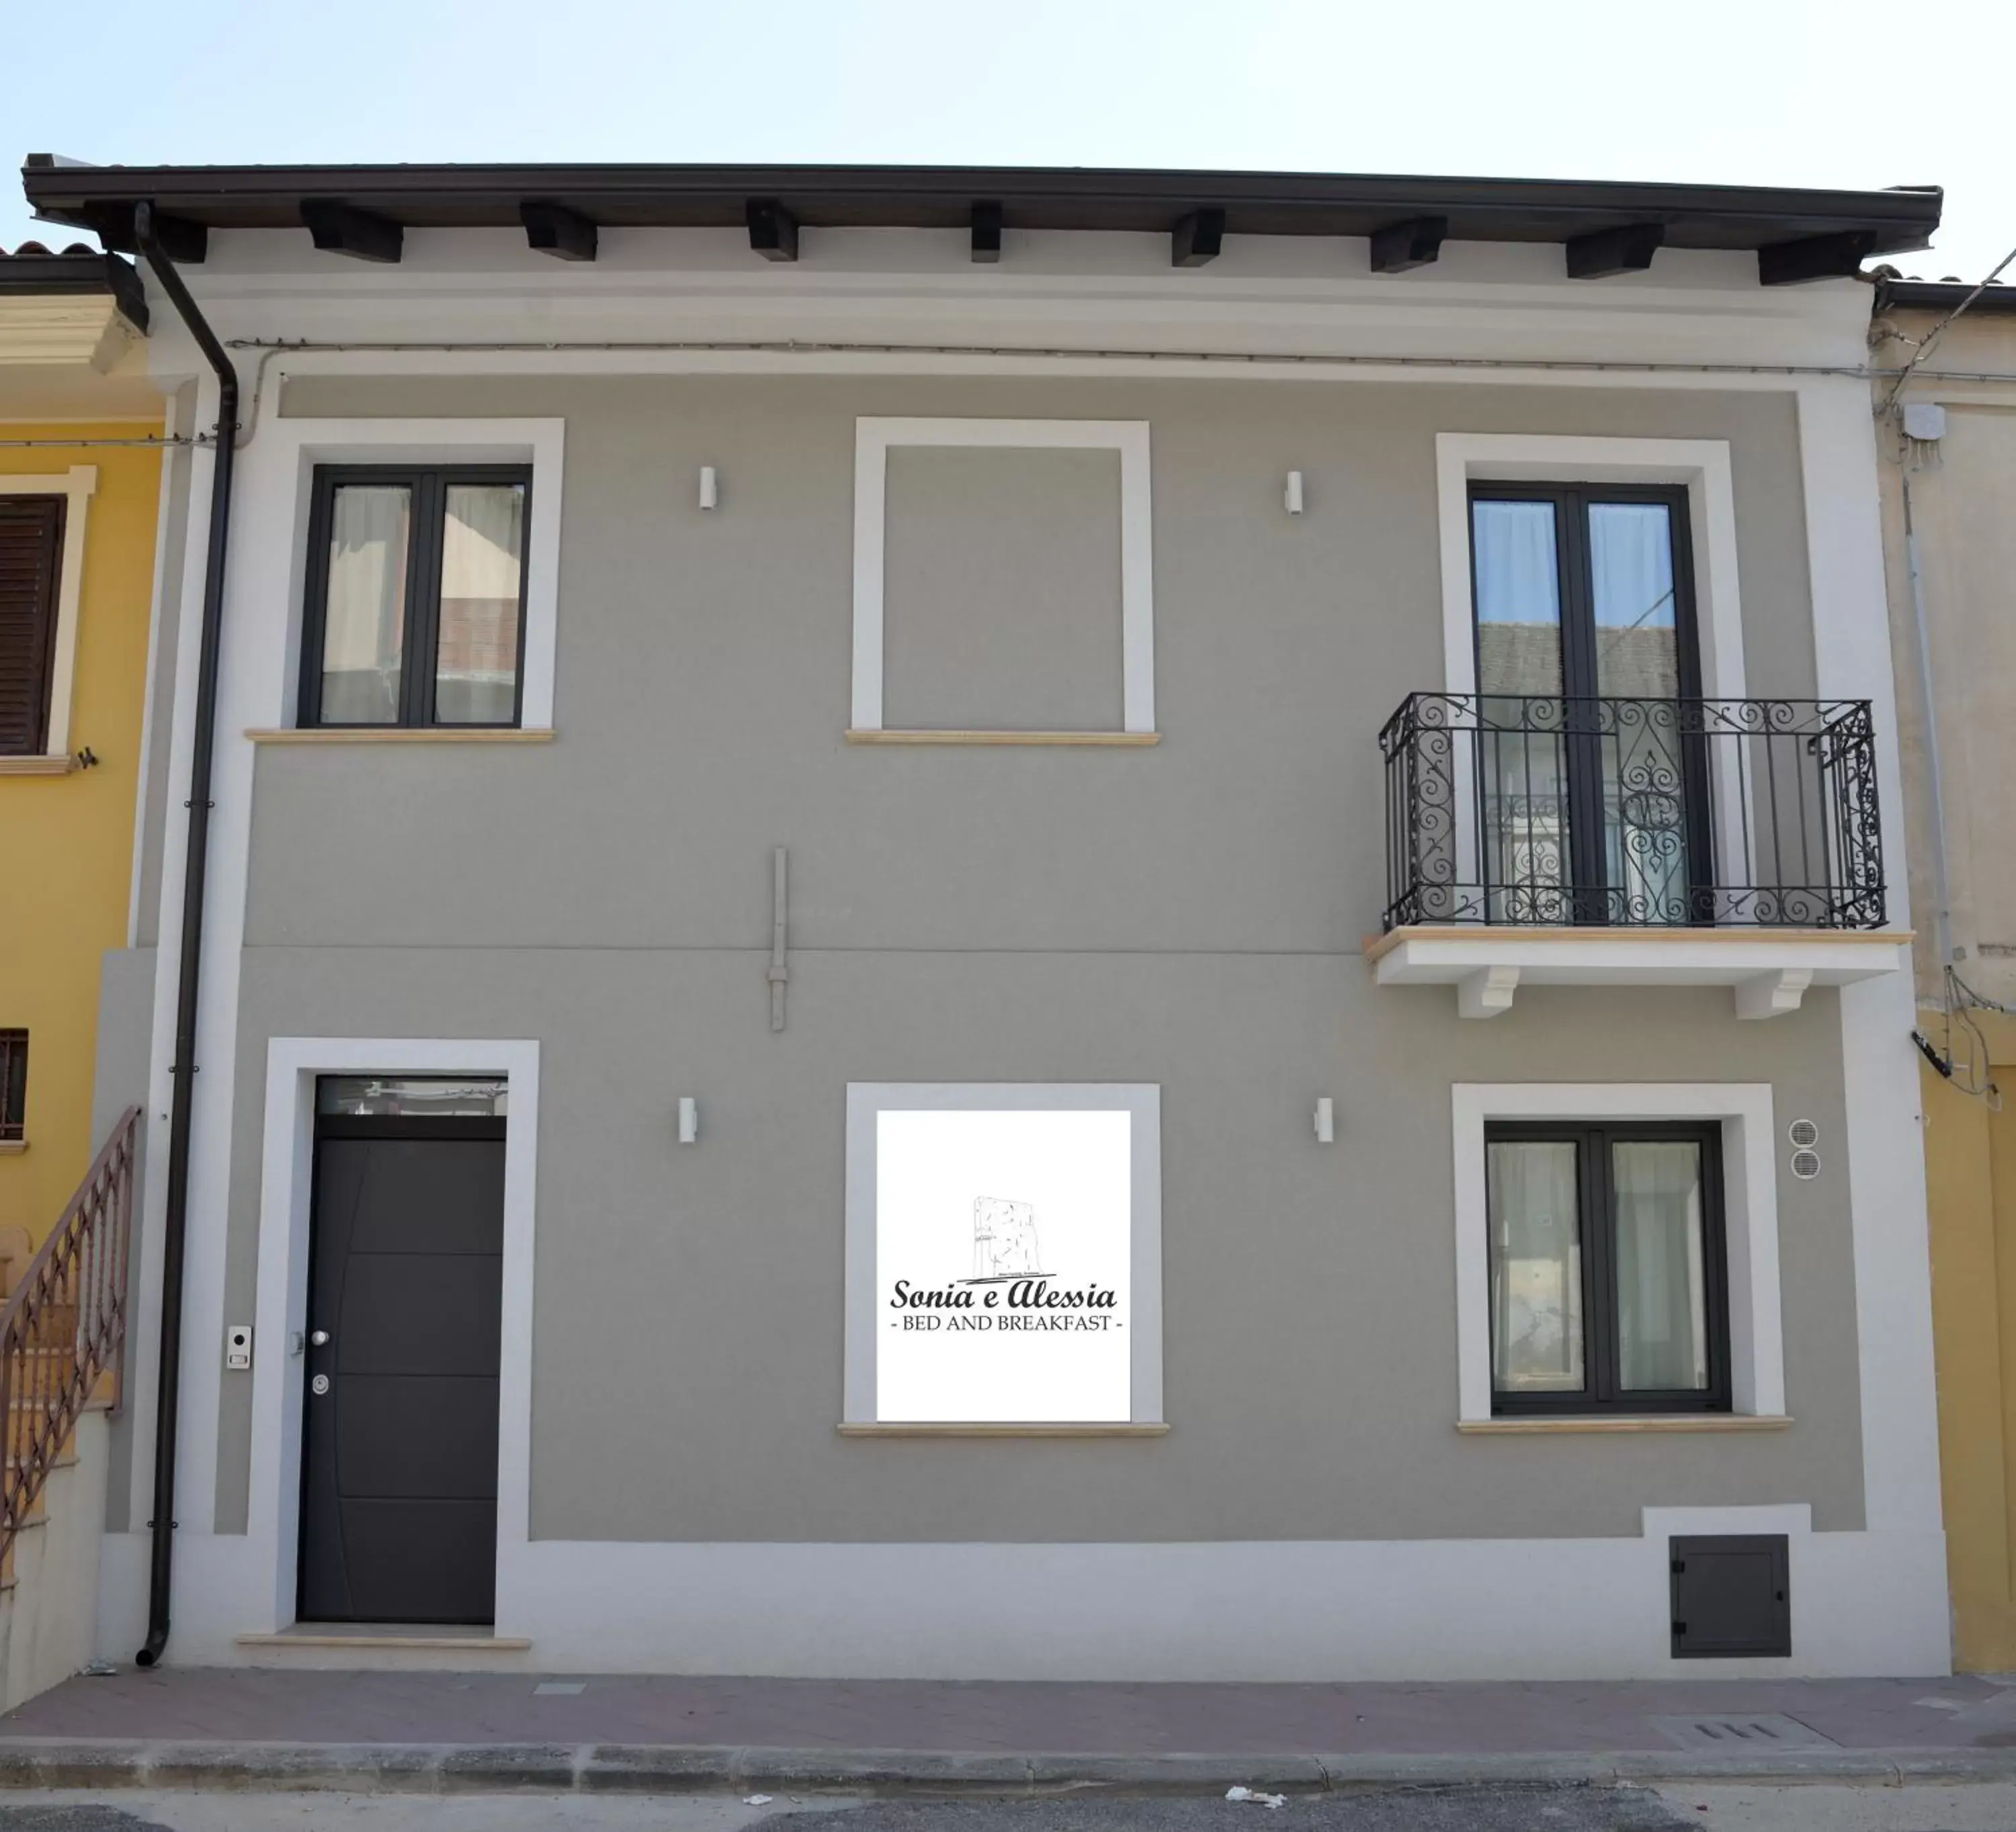 Property building in Sonia e Alessia